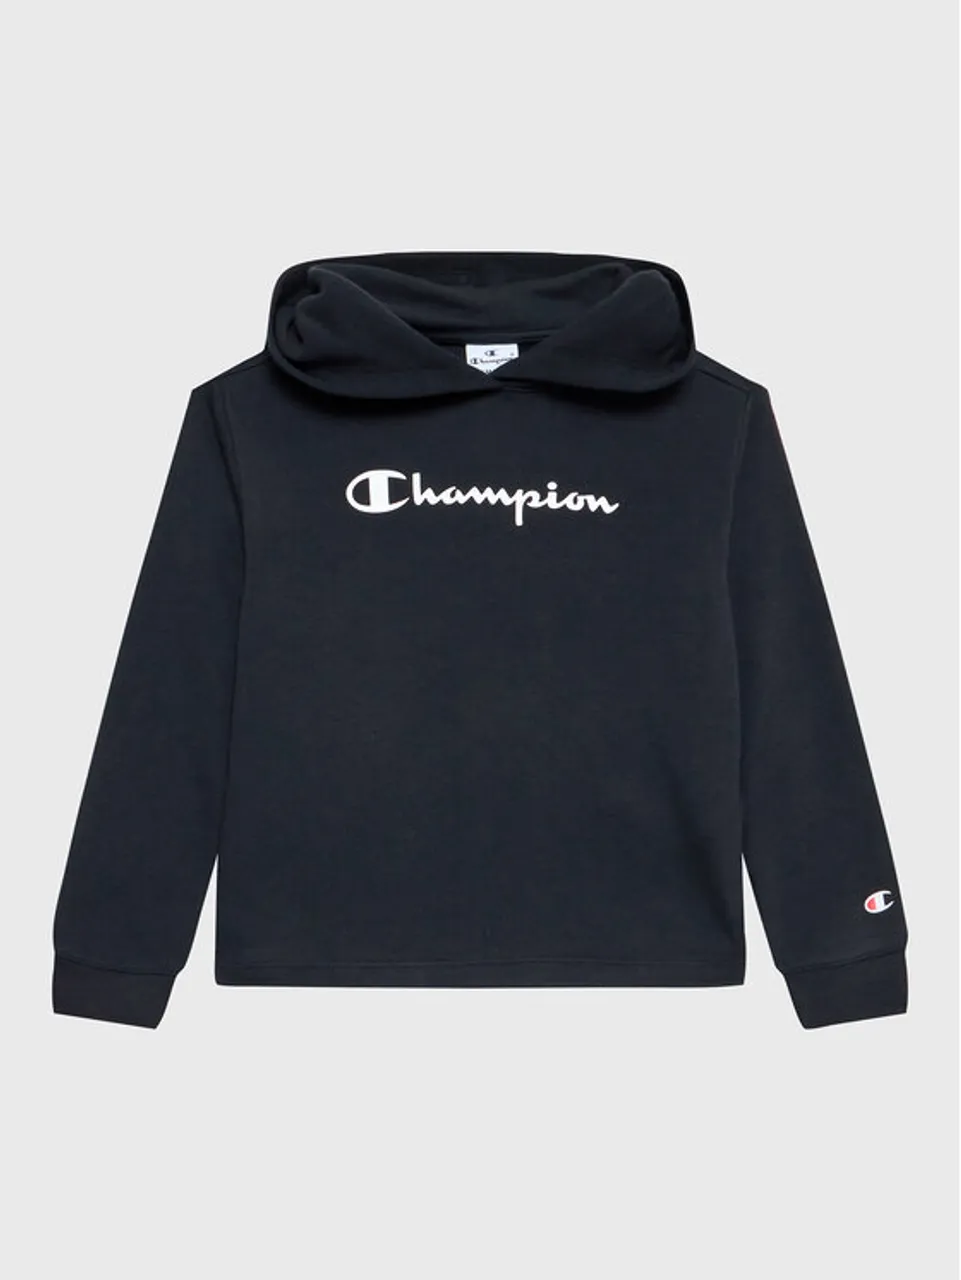 Champion Sweatshirt 404601 Schwarz Custom Fit - Preise vergleichen